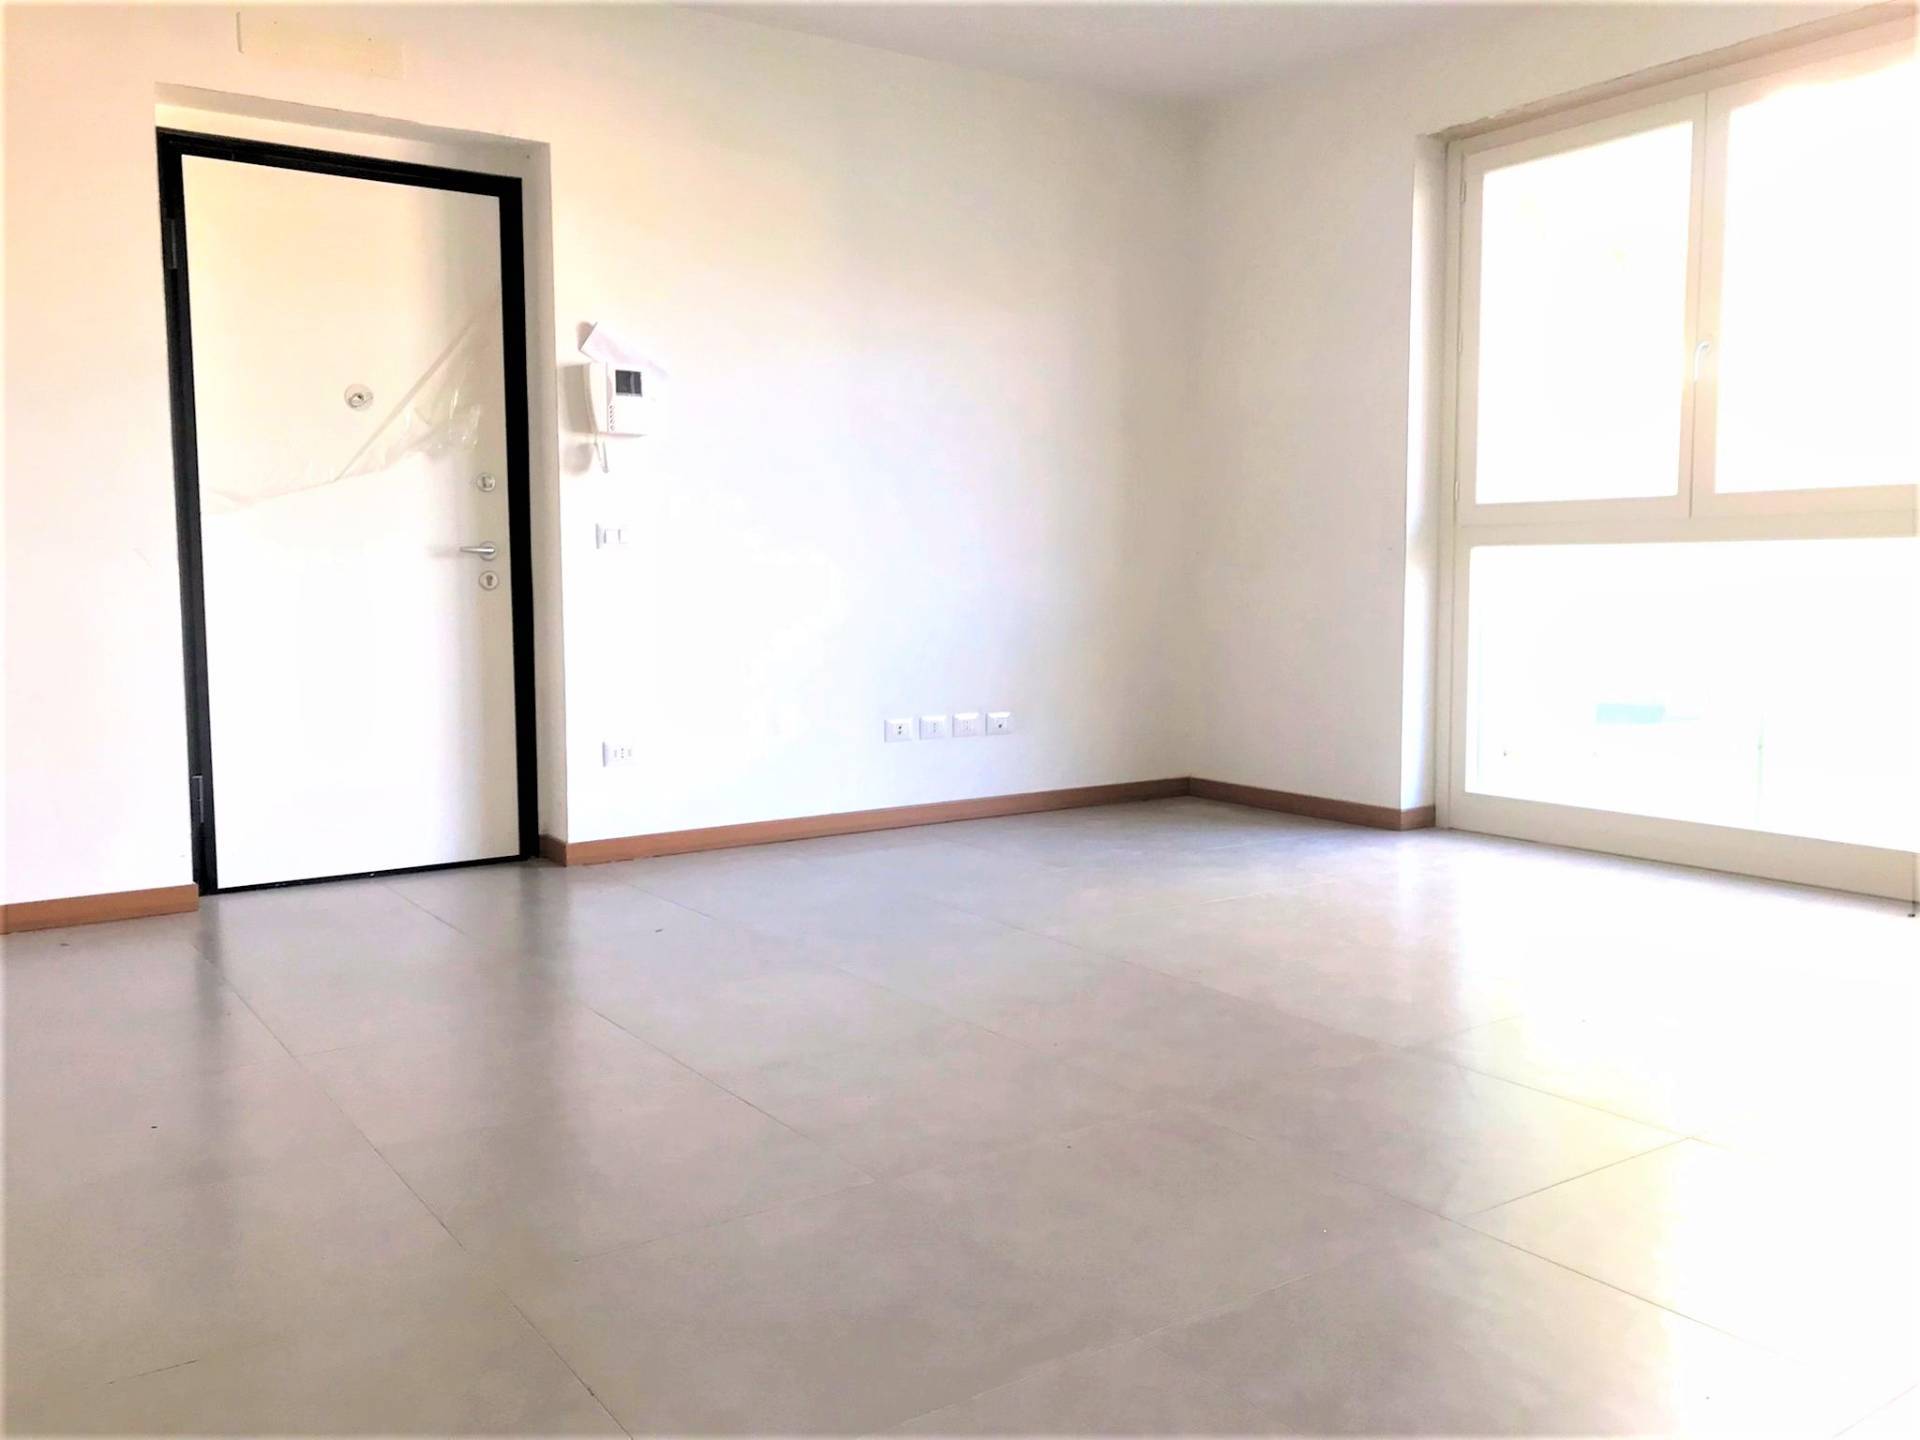 Appartamento in vendita a Trezzo sull'Adda, 3 locali, prezzo € 162.000 | PortaleAgenzieImmobiliari.it